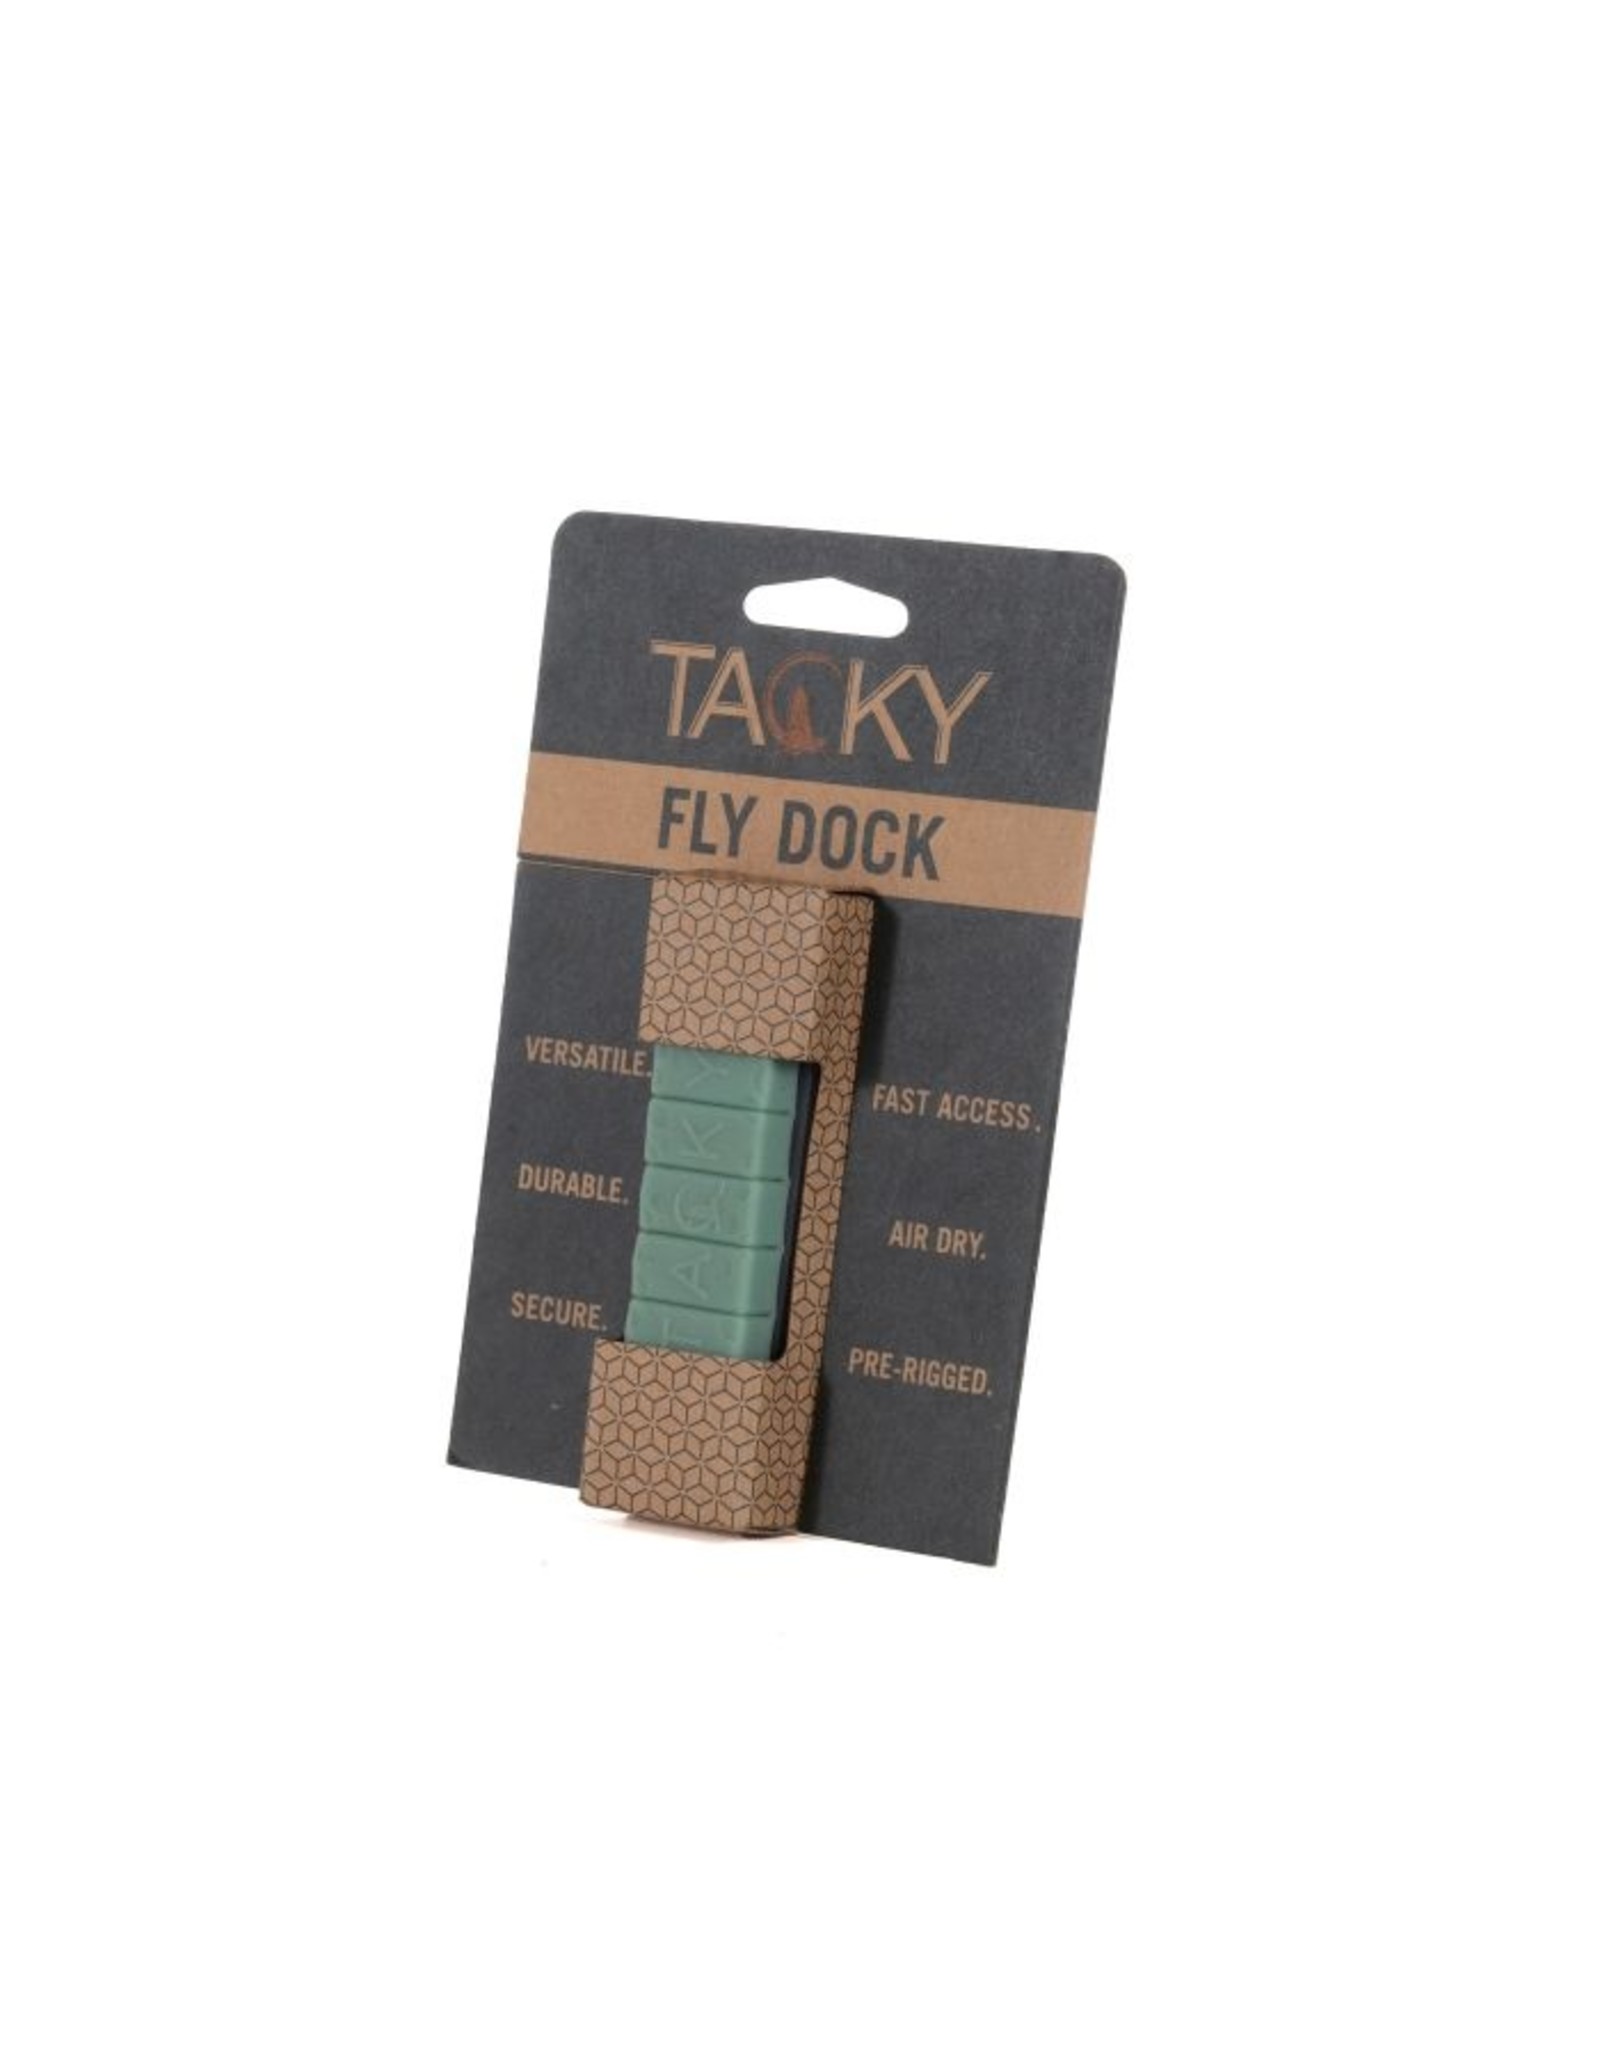 Fishpond Fishpond - Tacky Fly Dock